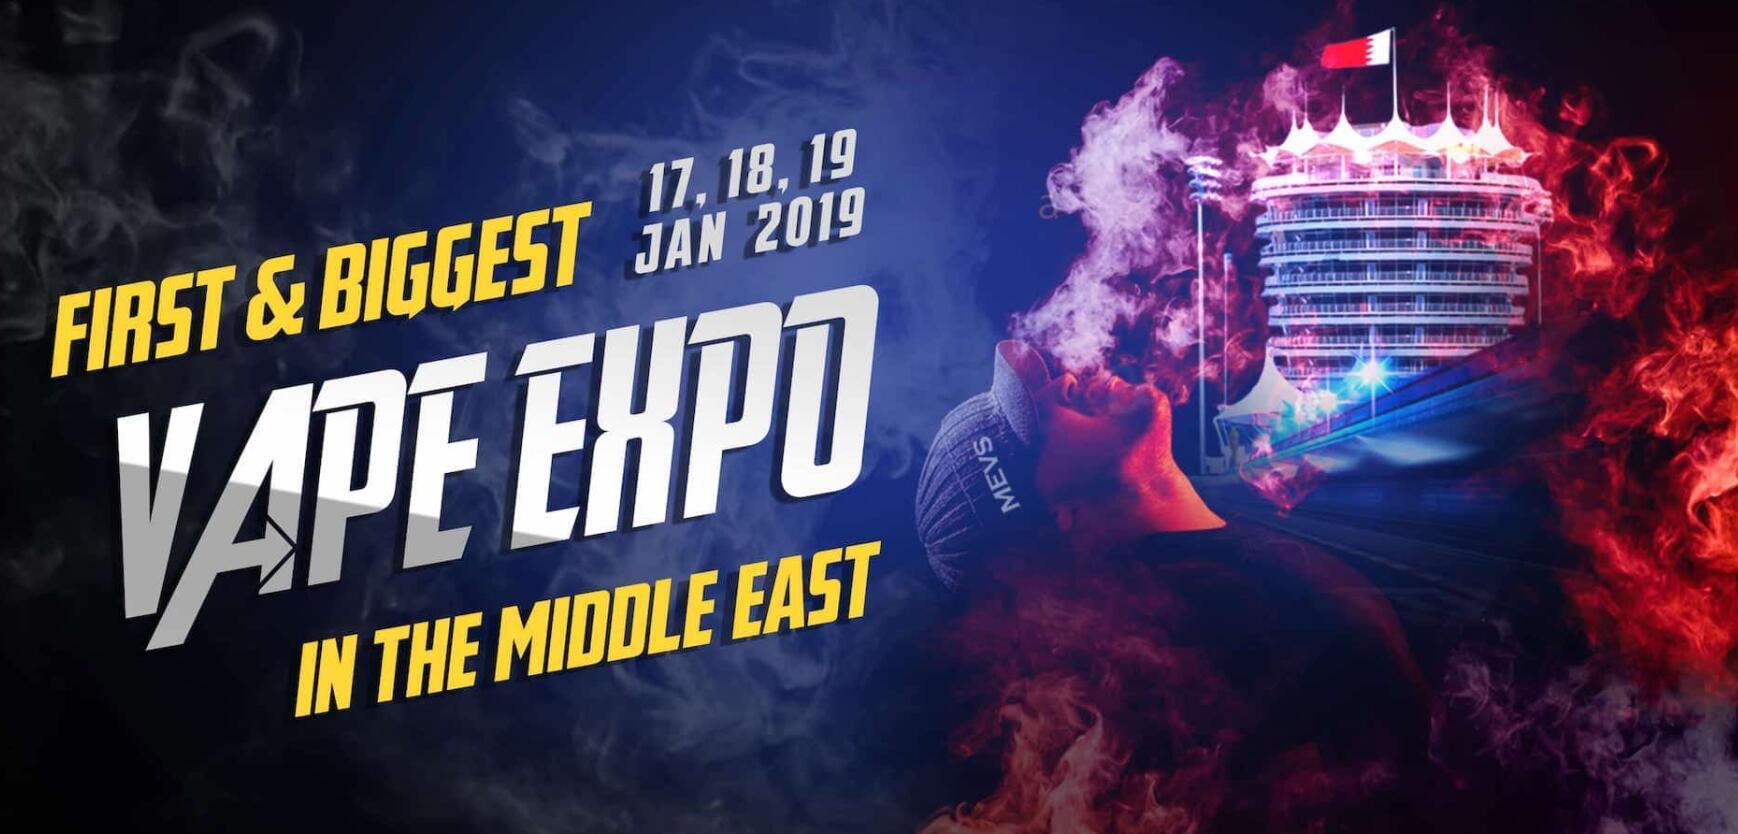 سيقام معرض الشرق الأوسط الخامس في الفترة ما بين 17 و 19 يناير 2019